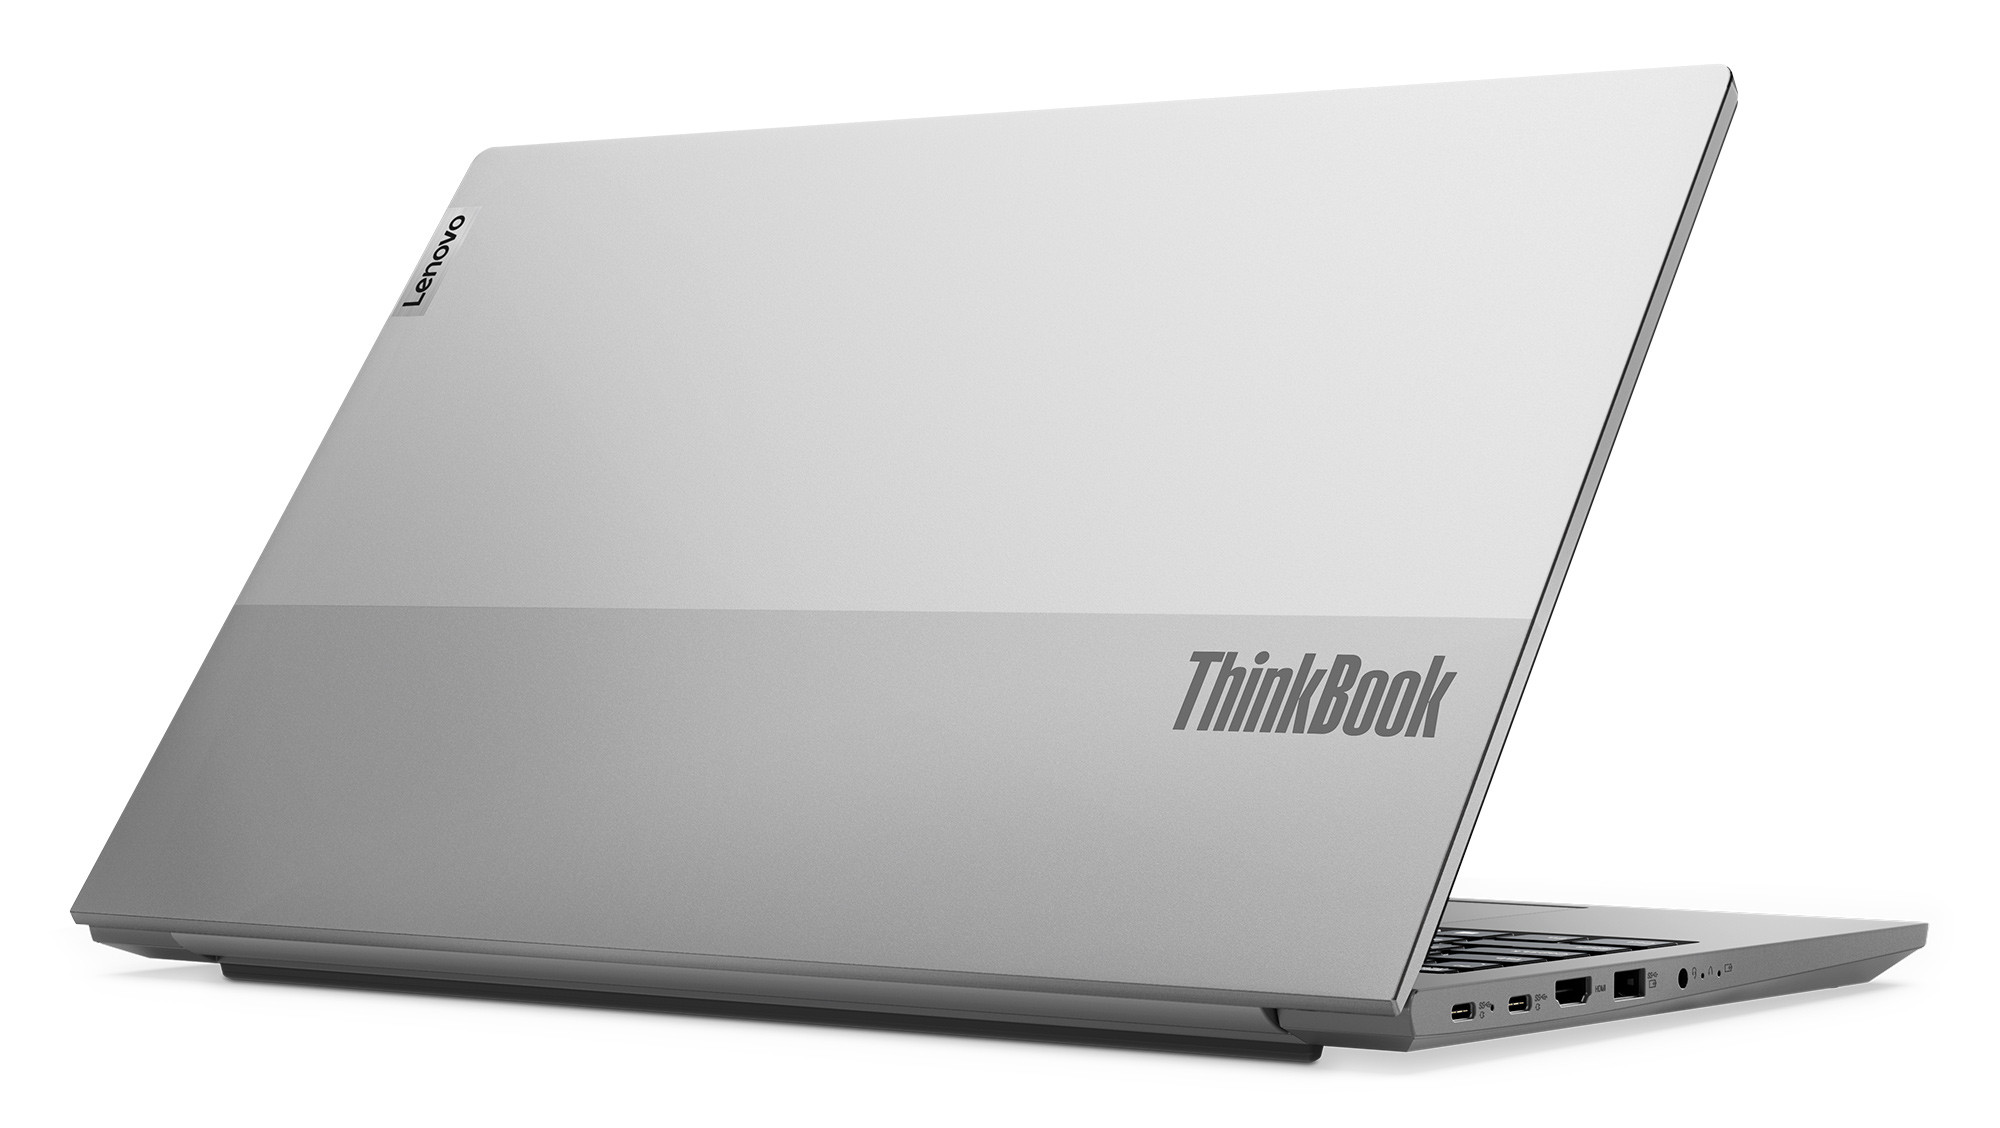 Lenovo mang tới lựa chọn mạnh mẽ và linh hoạt cho doanh nghiệp với bộ đôi ThinkBook mới phiên bản AMD